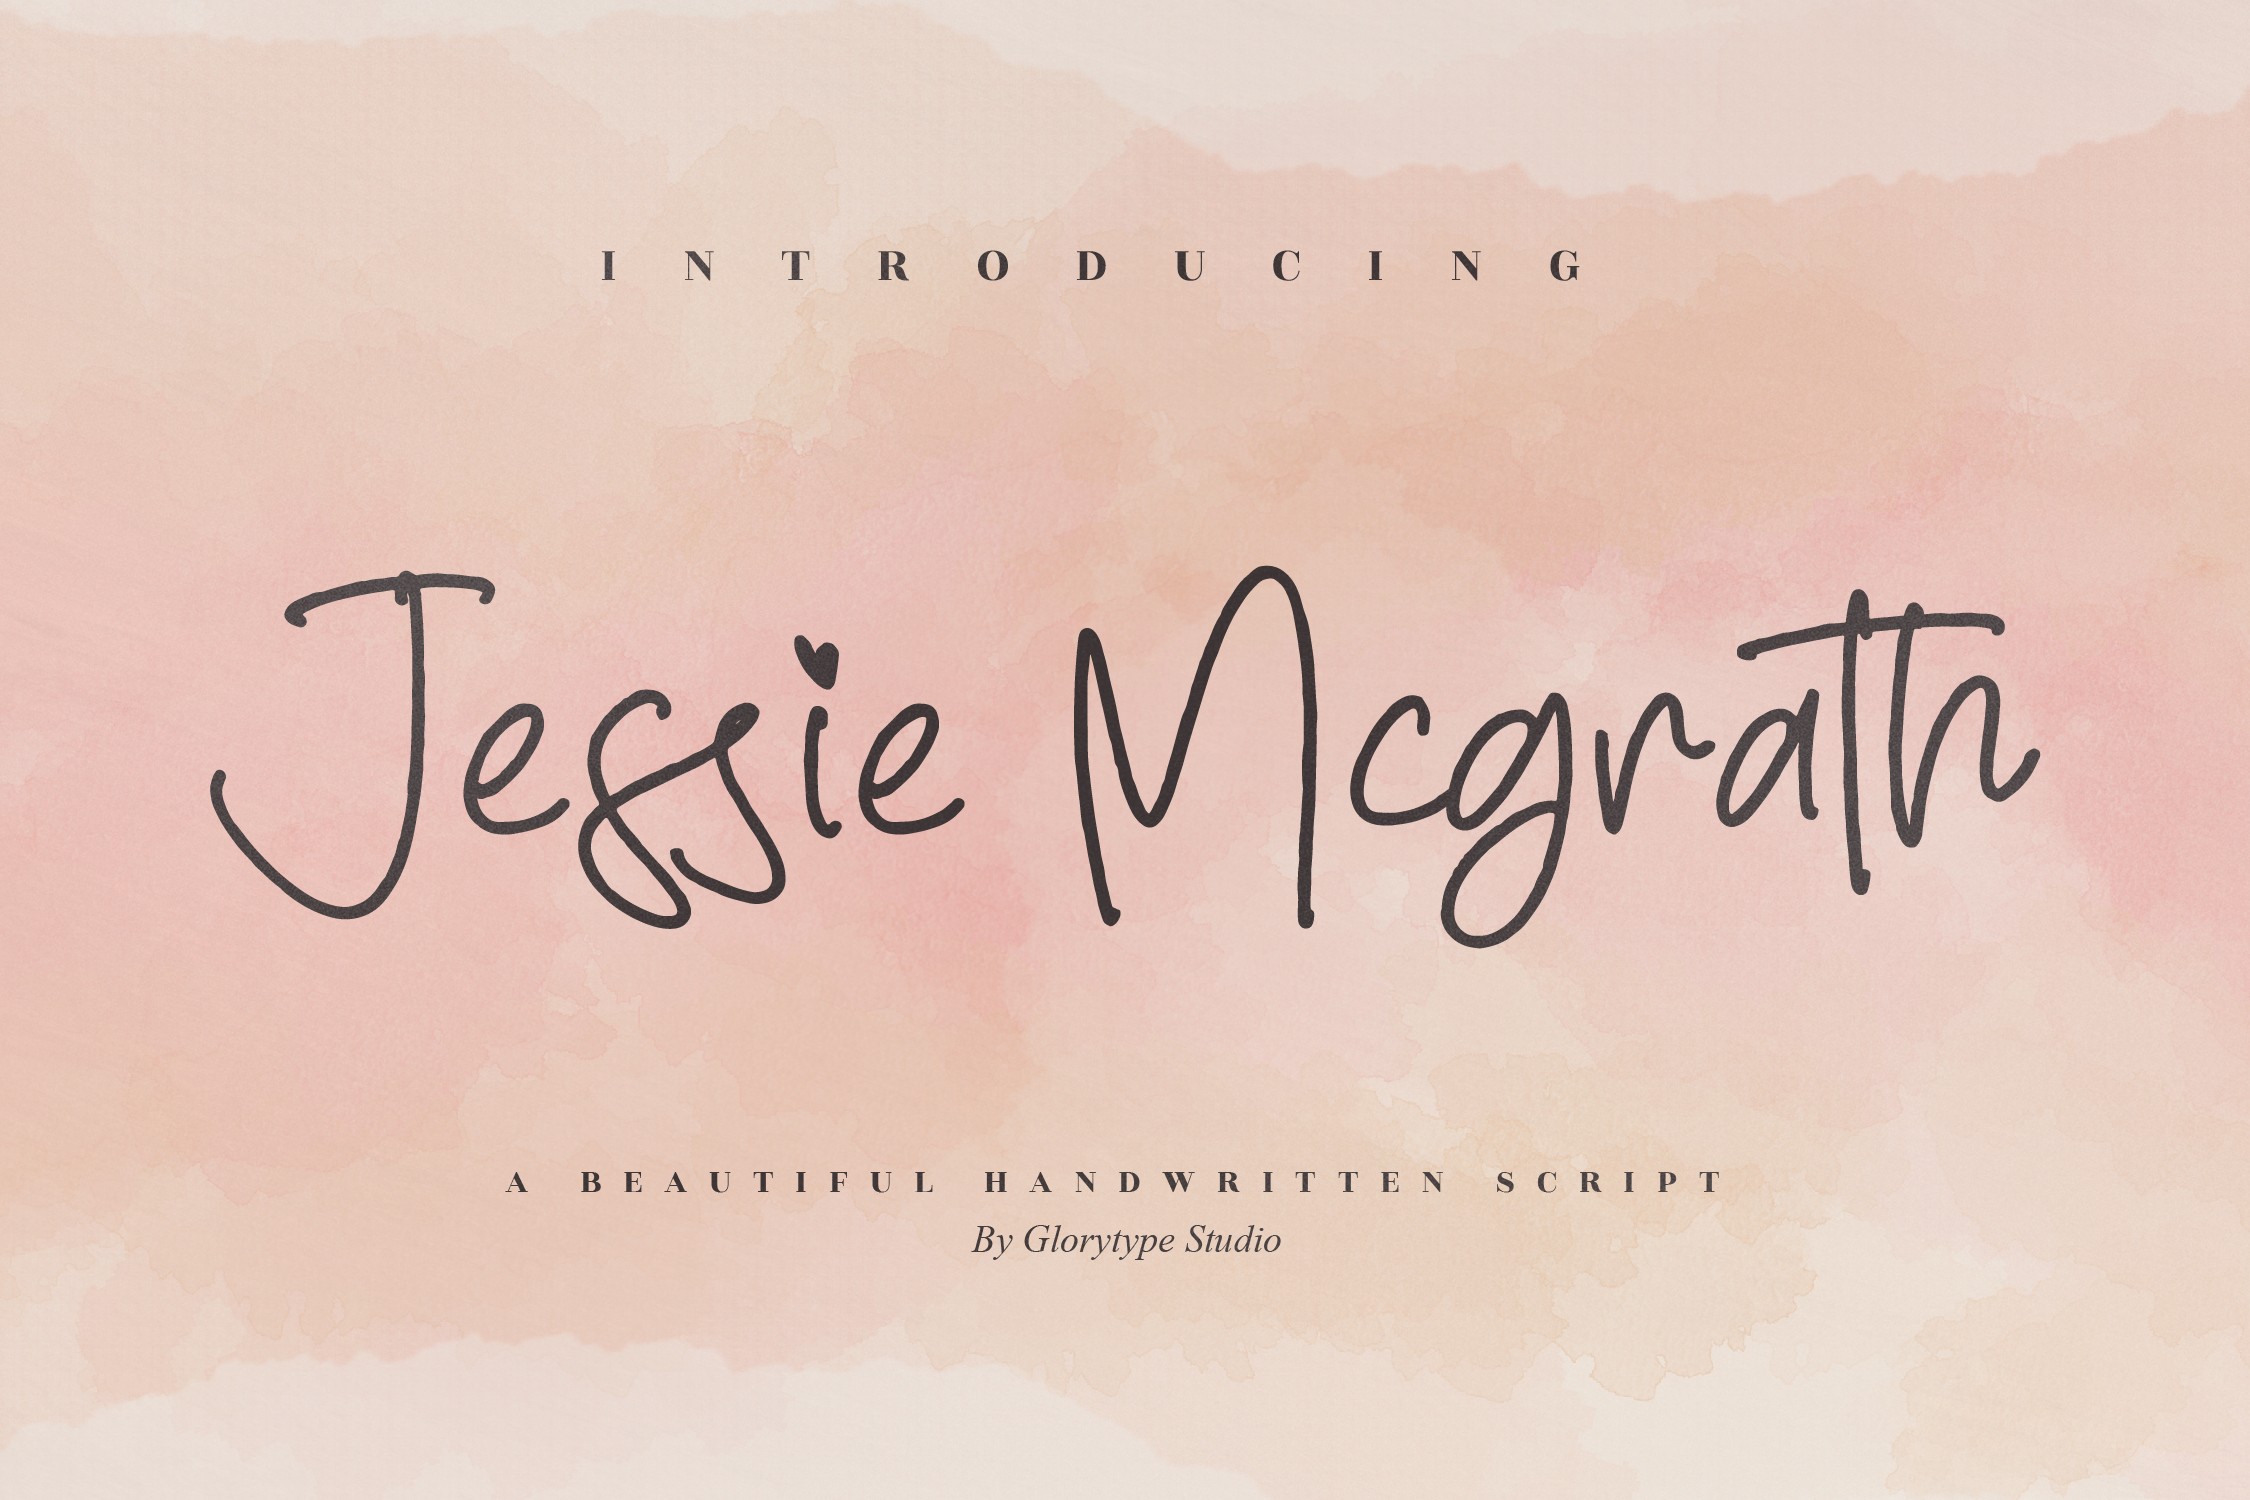 Jessie Mcgrath